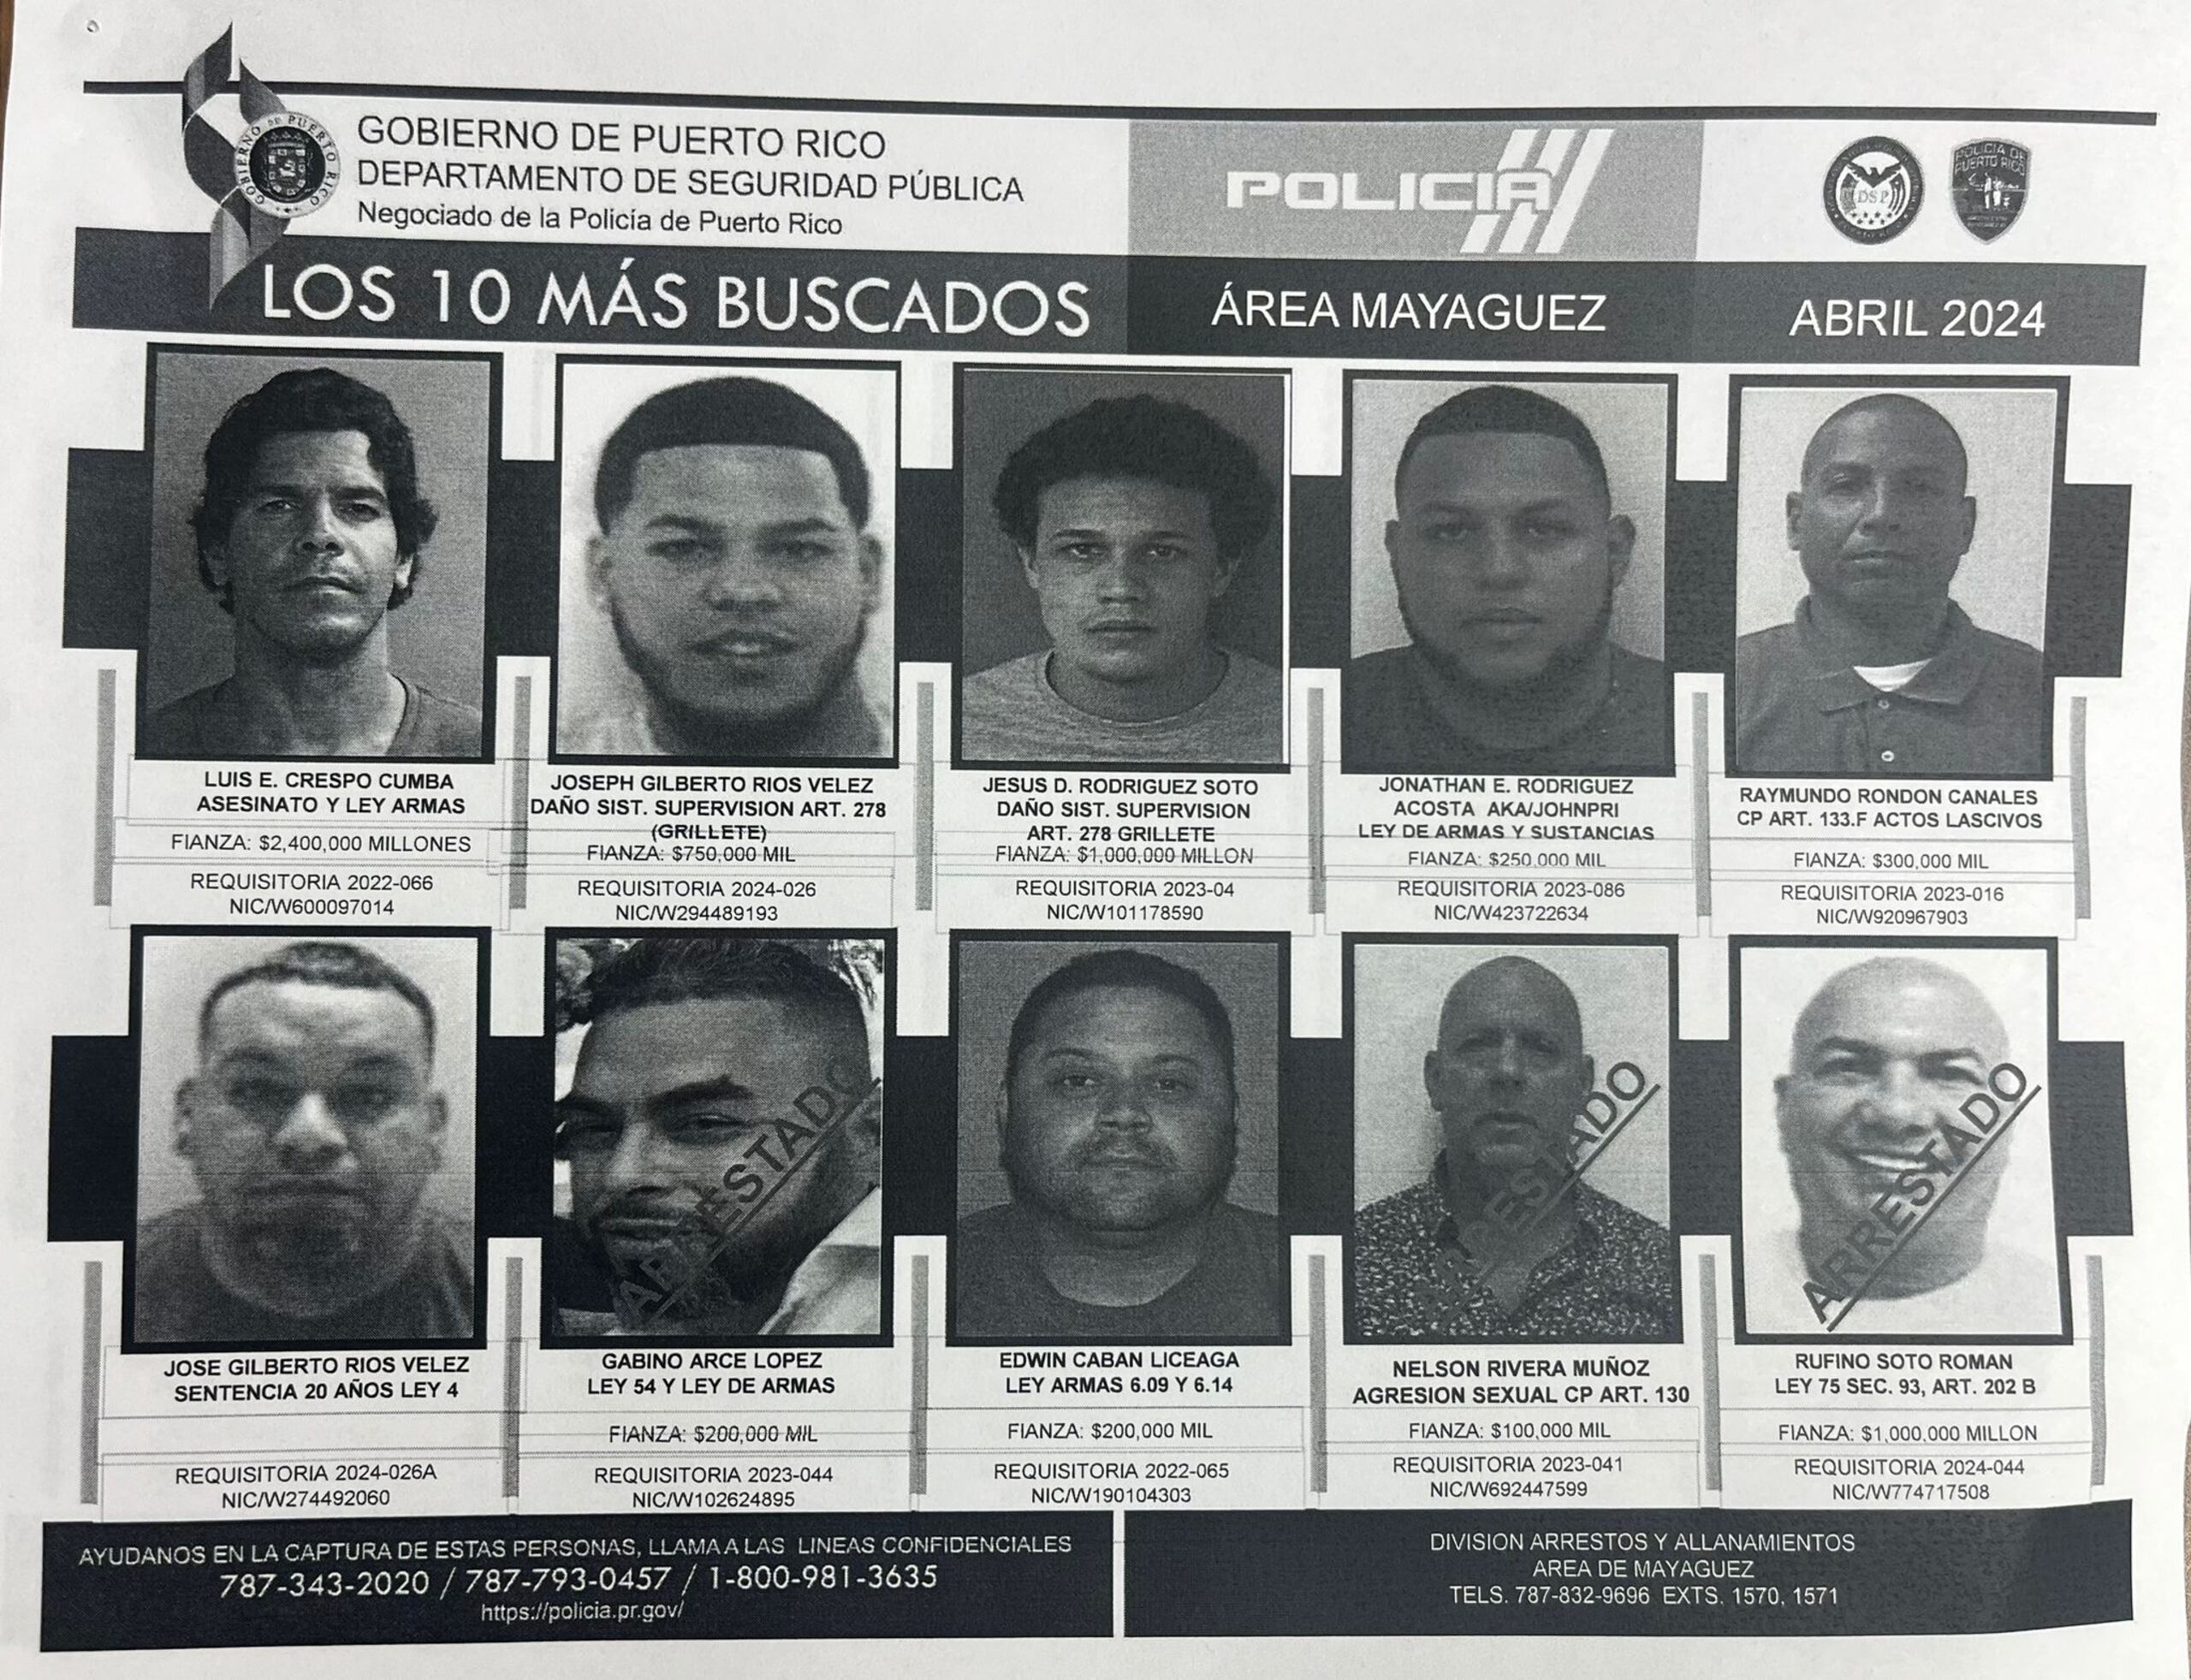 Jesús D. Rodríguez Soto (el tercero en la fila superior) figuraba en la lista de los 10 fugitivos más buscados en la zona policíaca de Mayagüez.